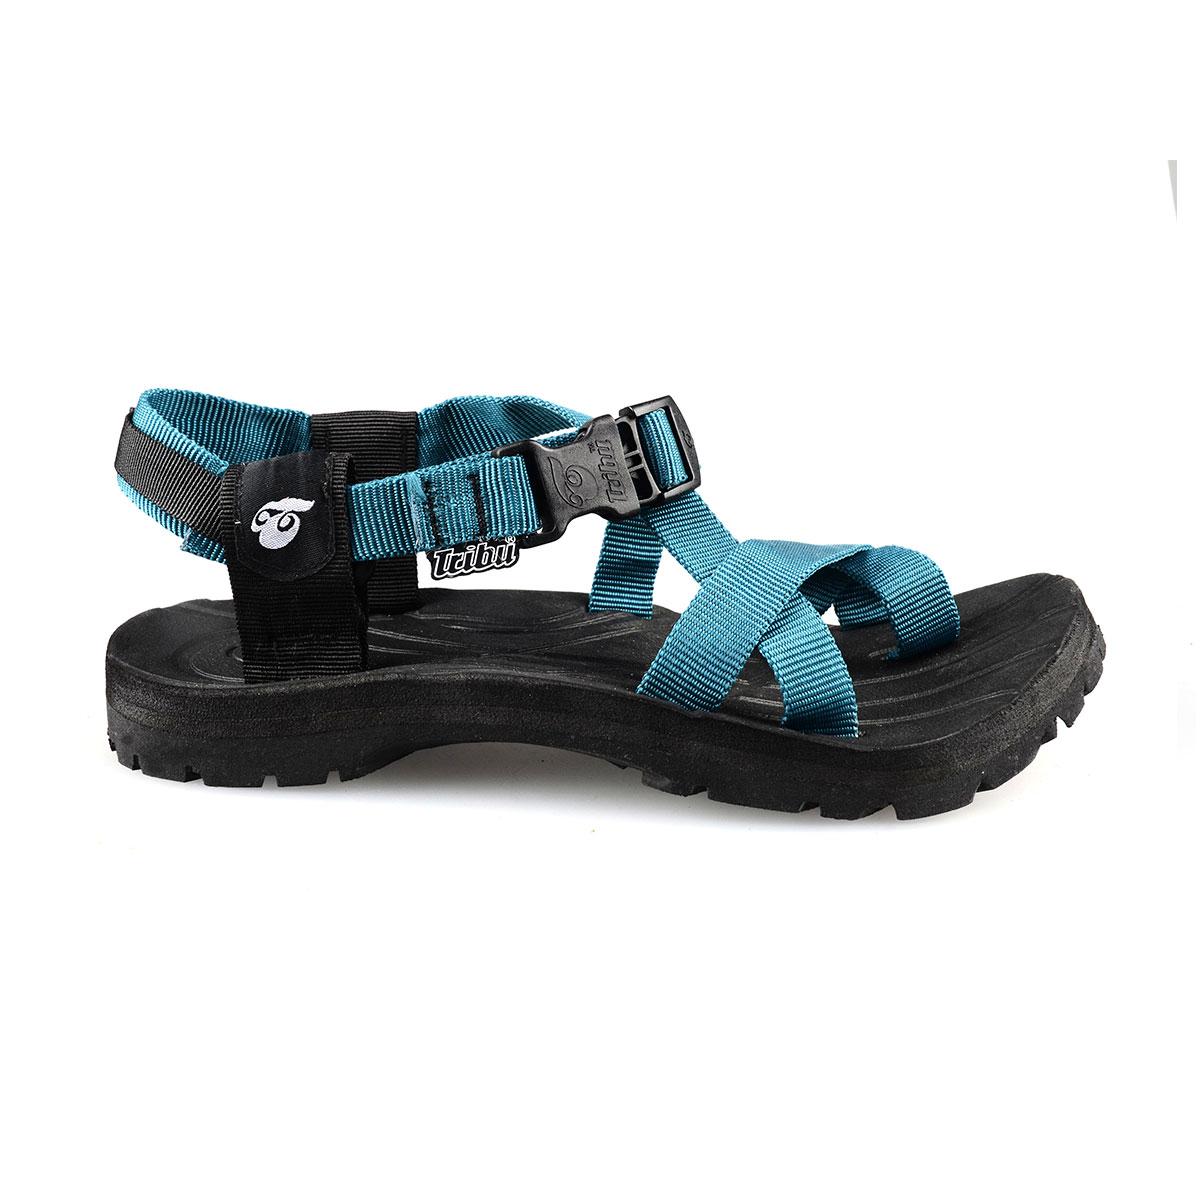 tribu outdoor sandals